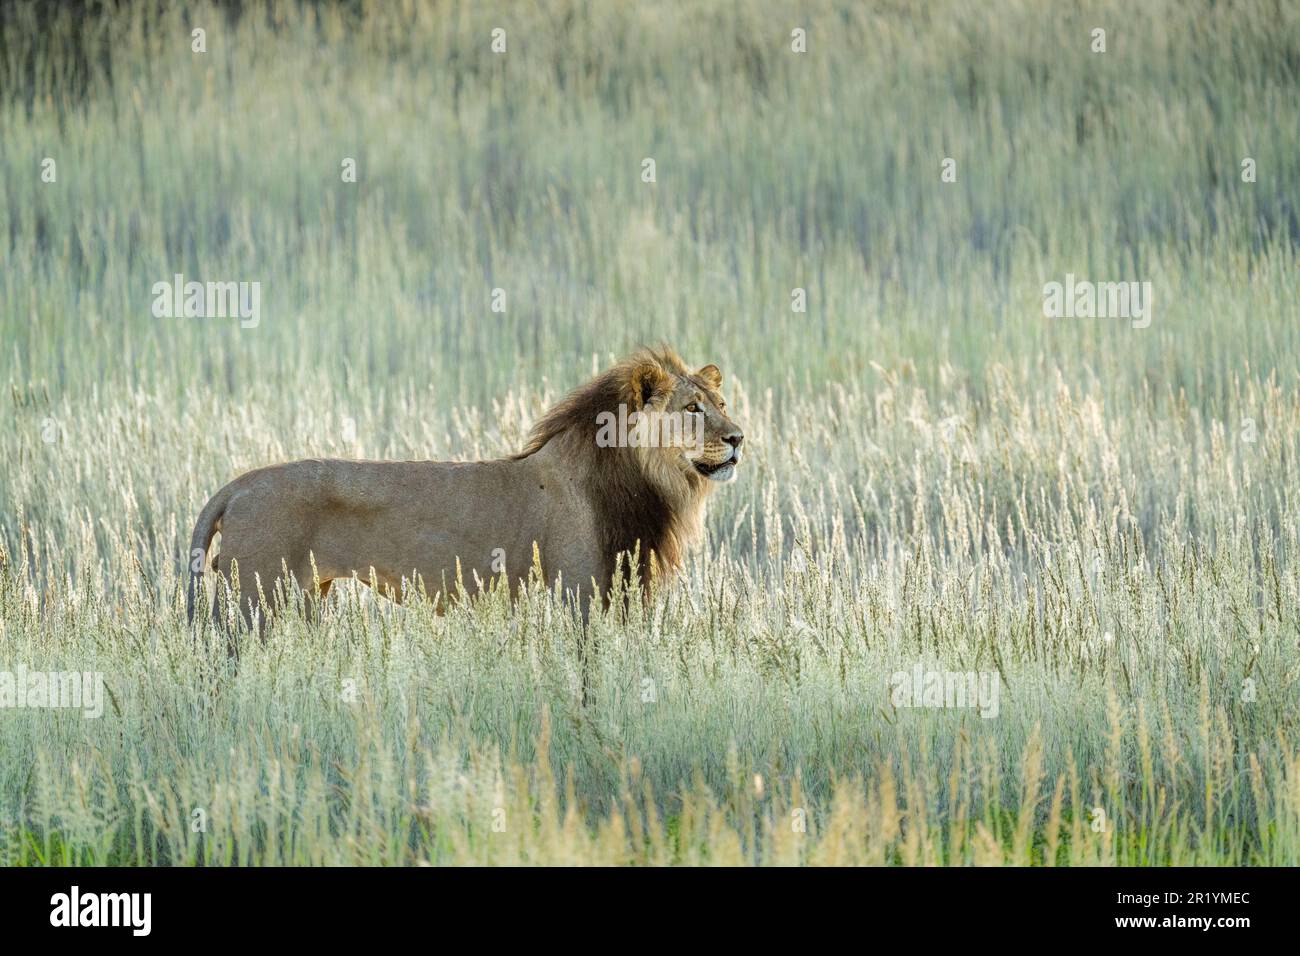 Leone in erba a piedi, leone di criniera nera, vista laterale. Kalahari, Kgalagadi Transfrontier Park, Sudafrica Foto Stock